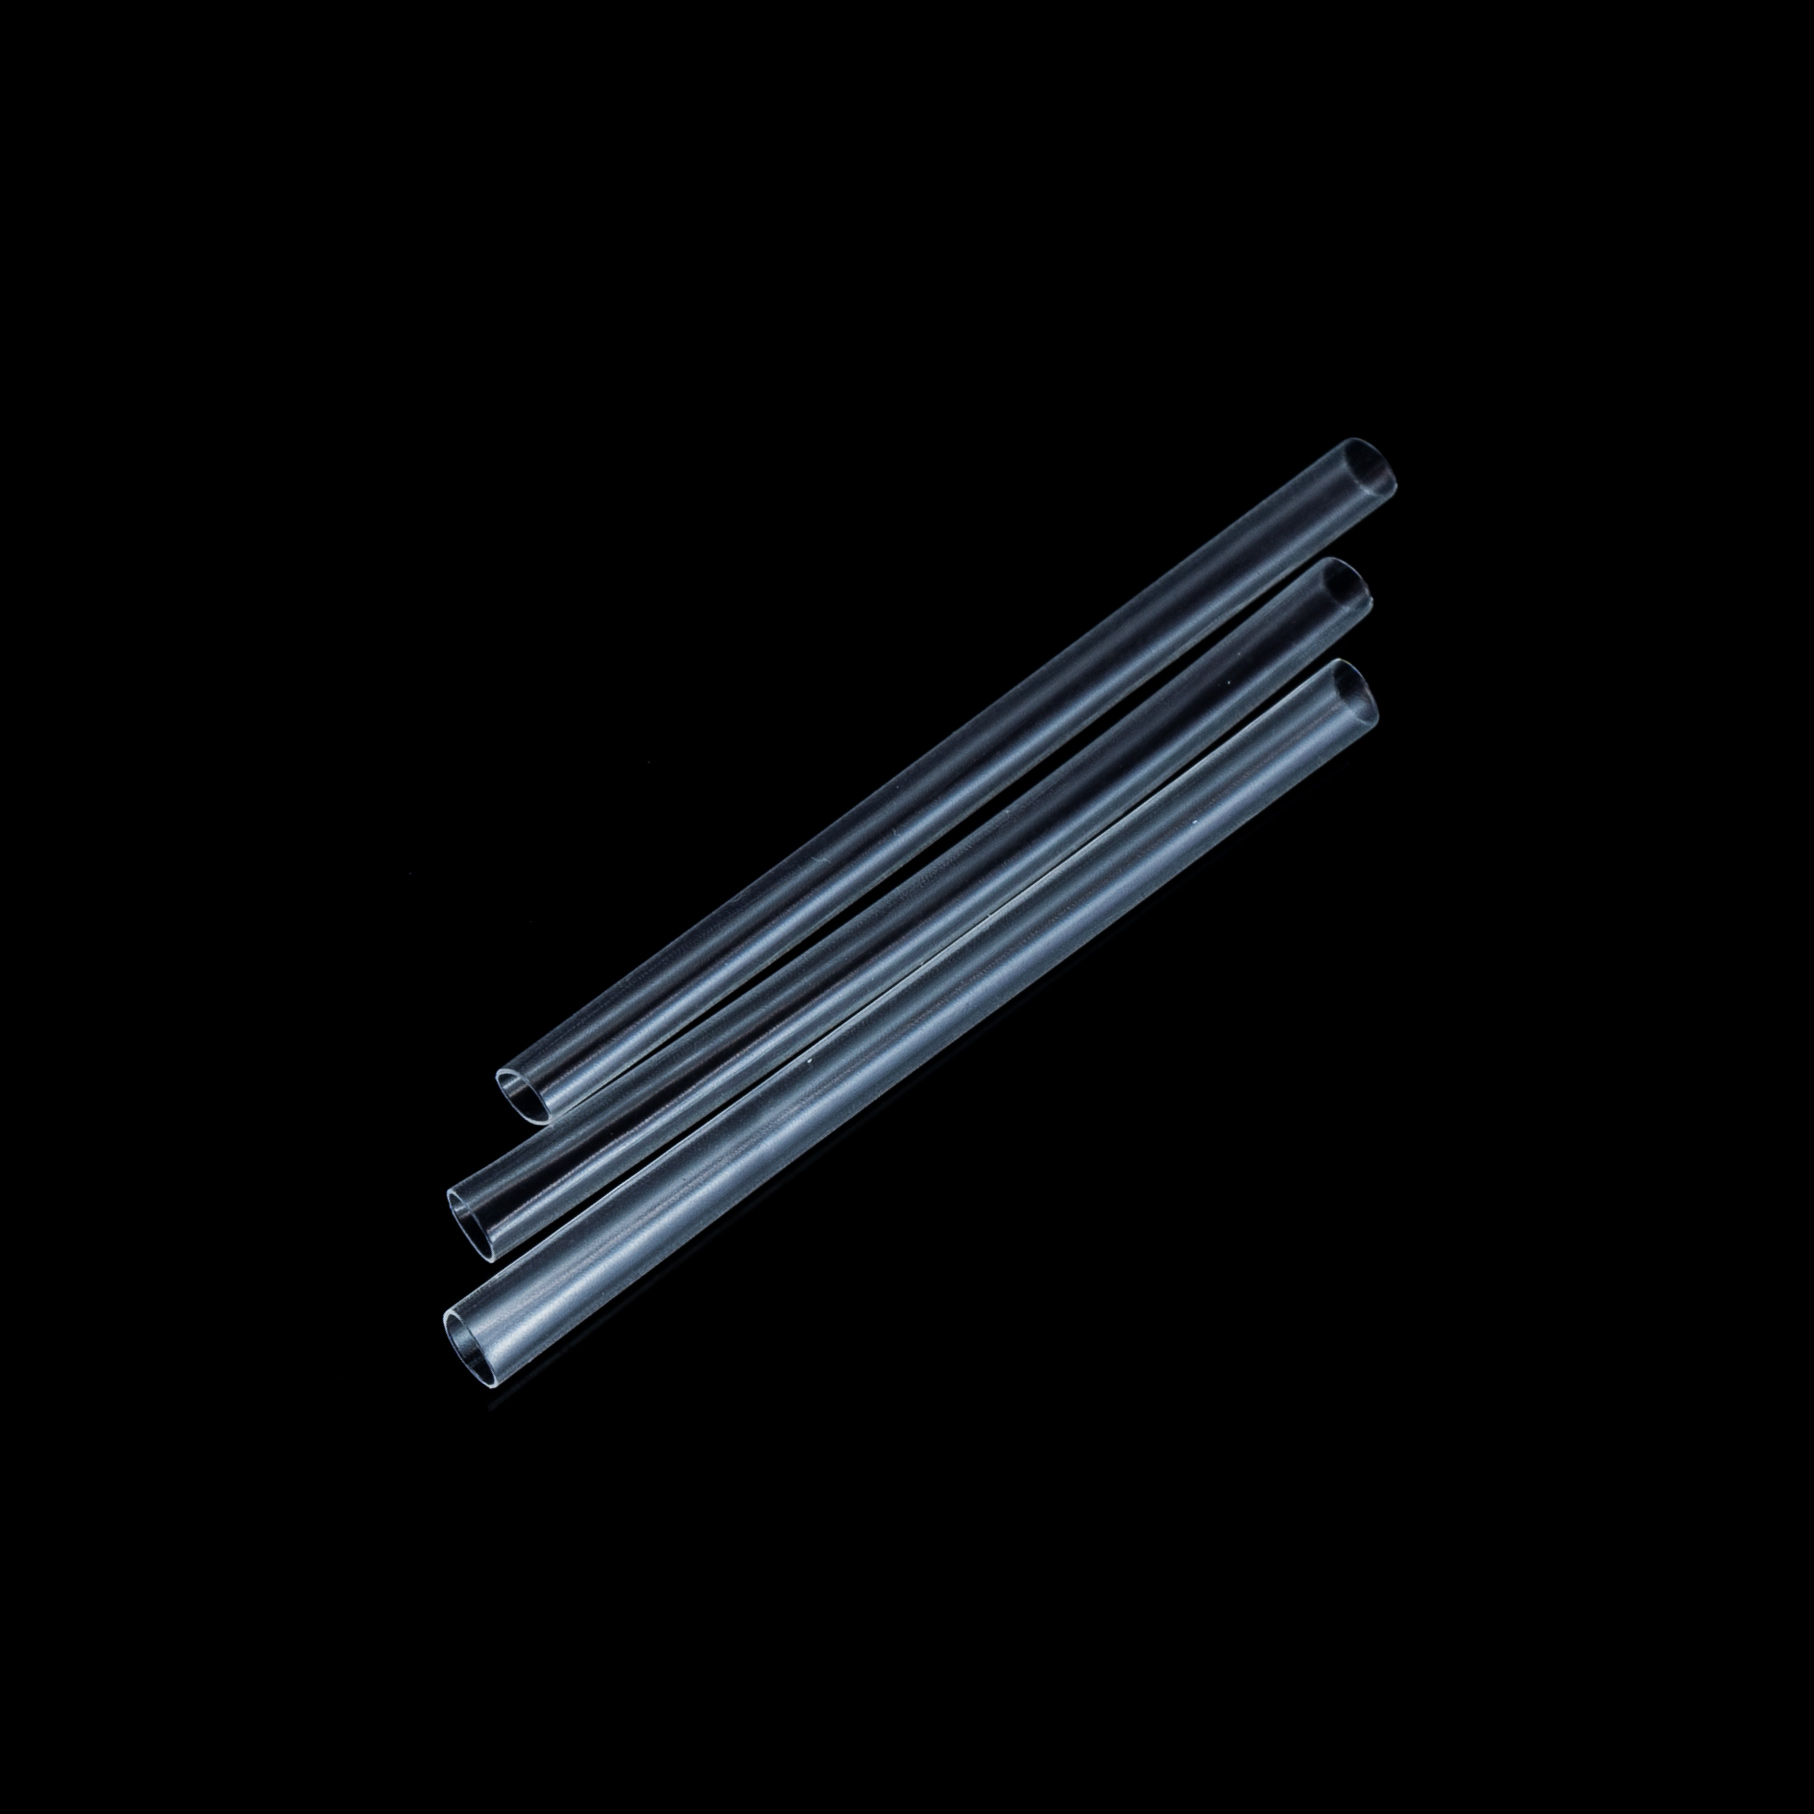 Garda součásti montáže - Smršťovací hadička 1,6mm čirá 10ks